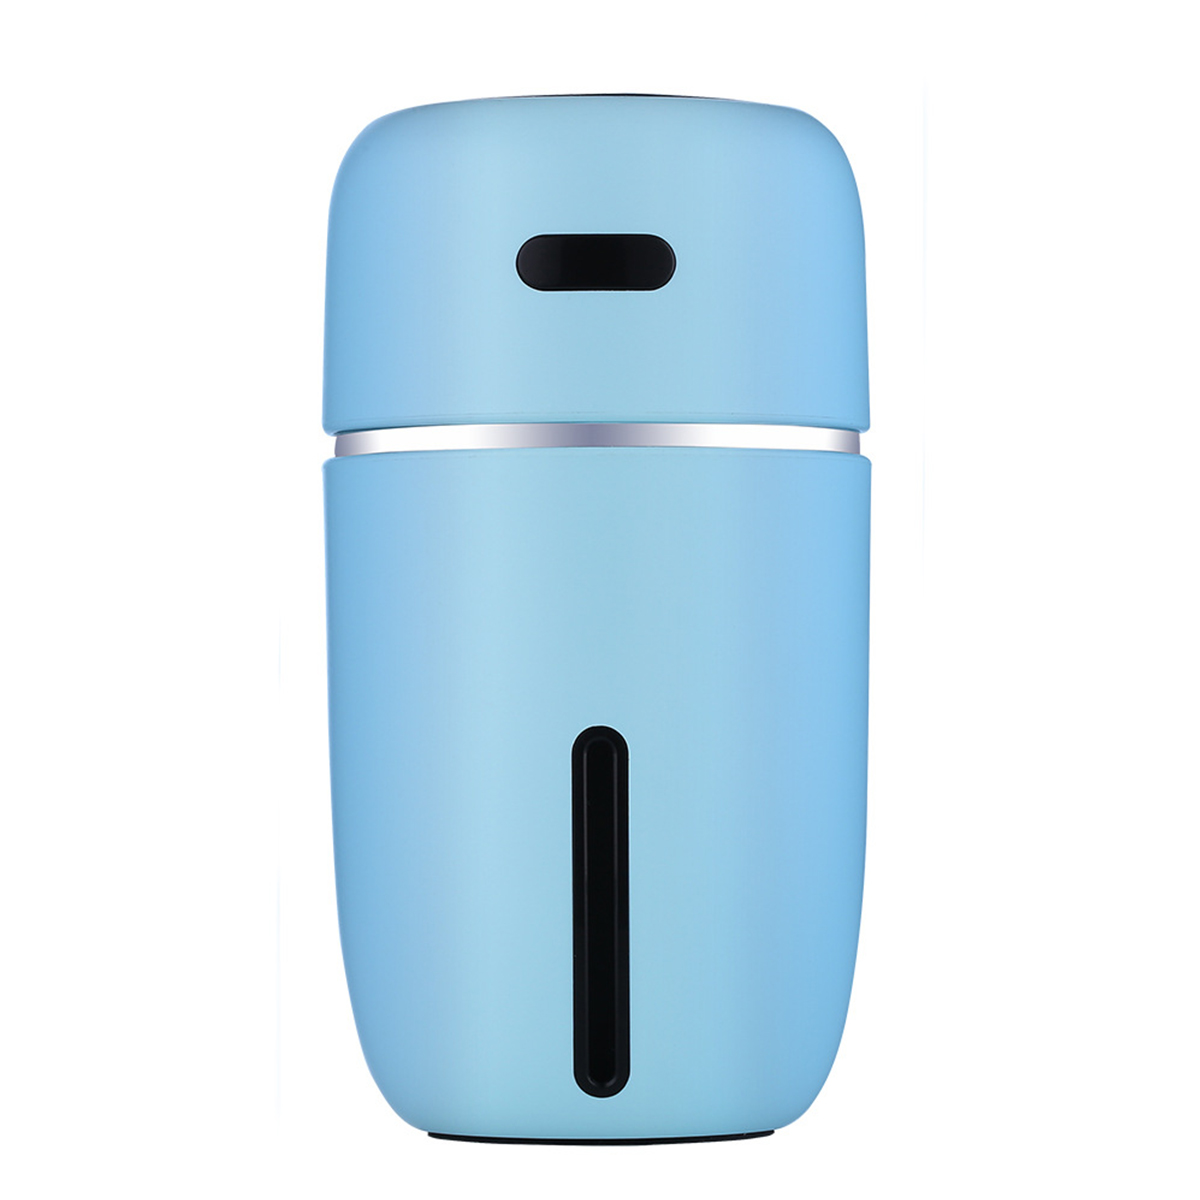 Heimluftbefeuchter BRIGHTAKE Aroma-Funktion m²) 10 (Raumgröße: Leiser Luftbefeuchter Blau mit